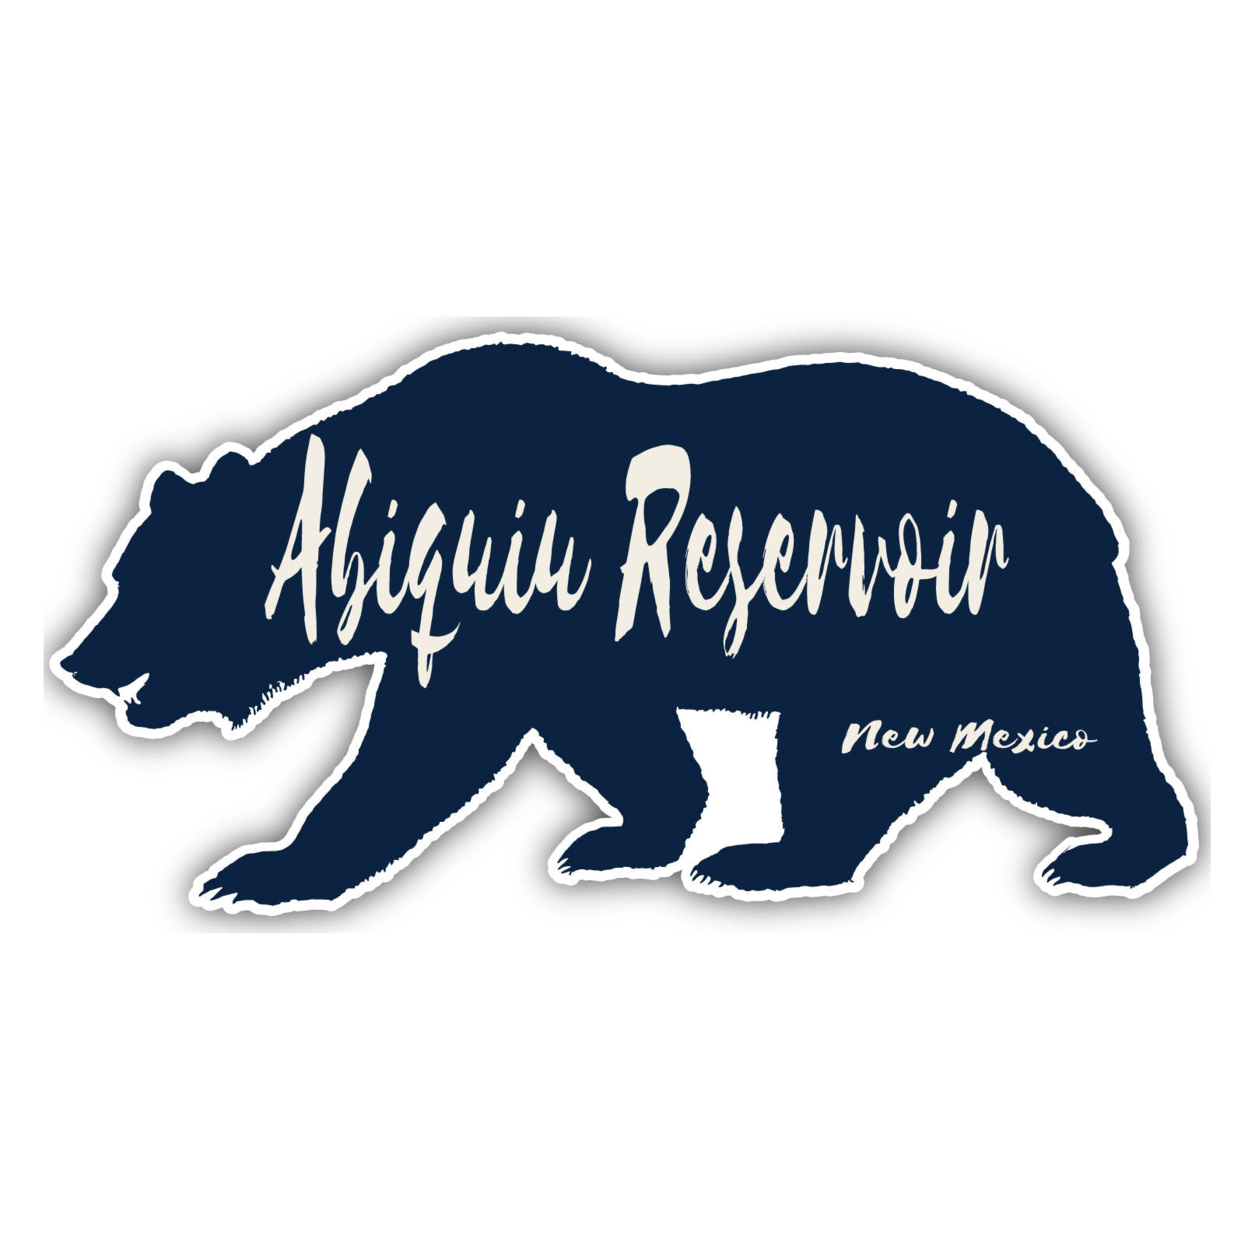 Abiquiu Reservoir New Mexico Souvenir Decorative Stickers (Choose Theme And Size) - Single Unit, 2-Inch, Bear